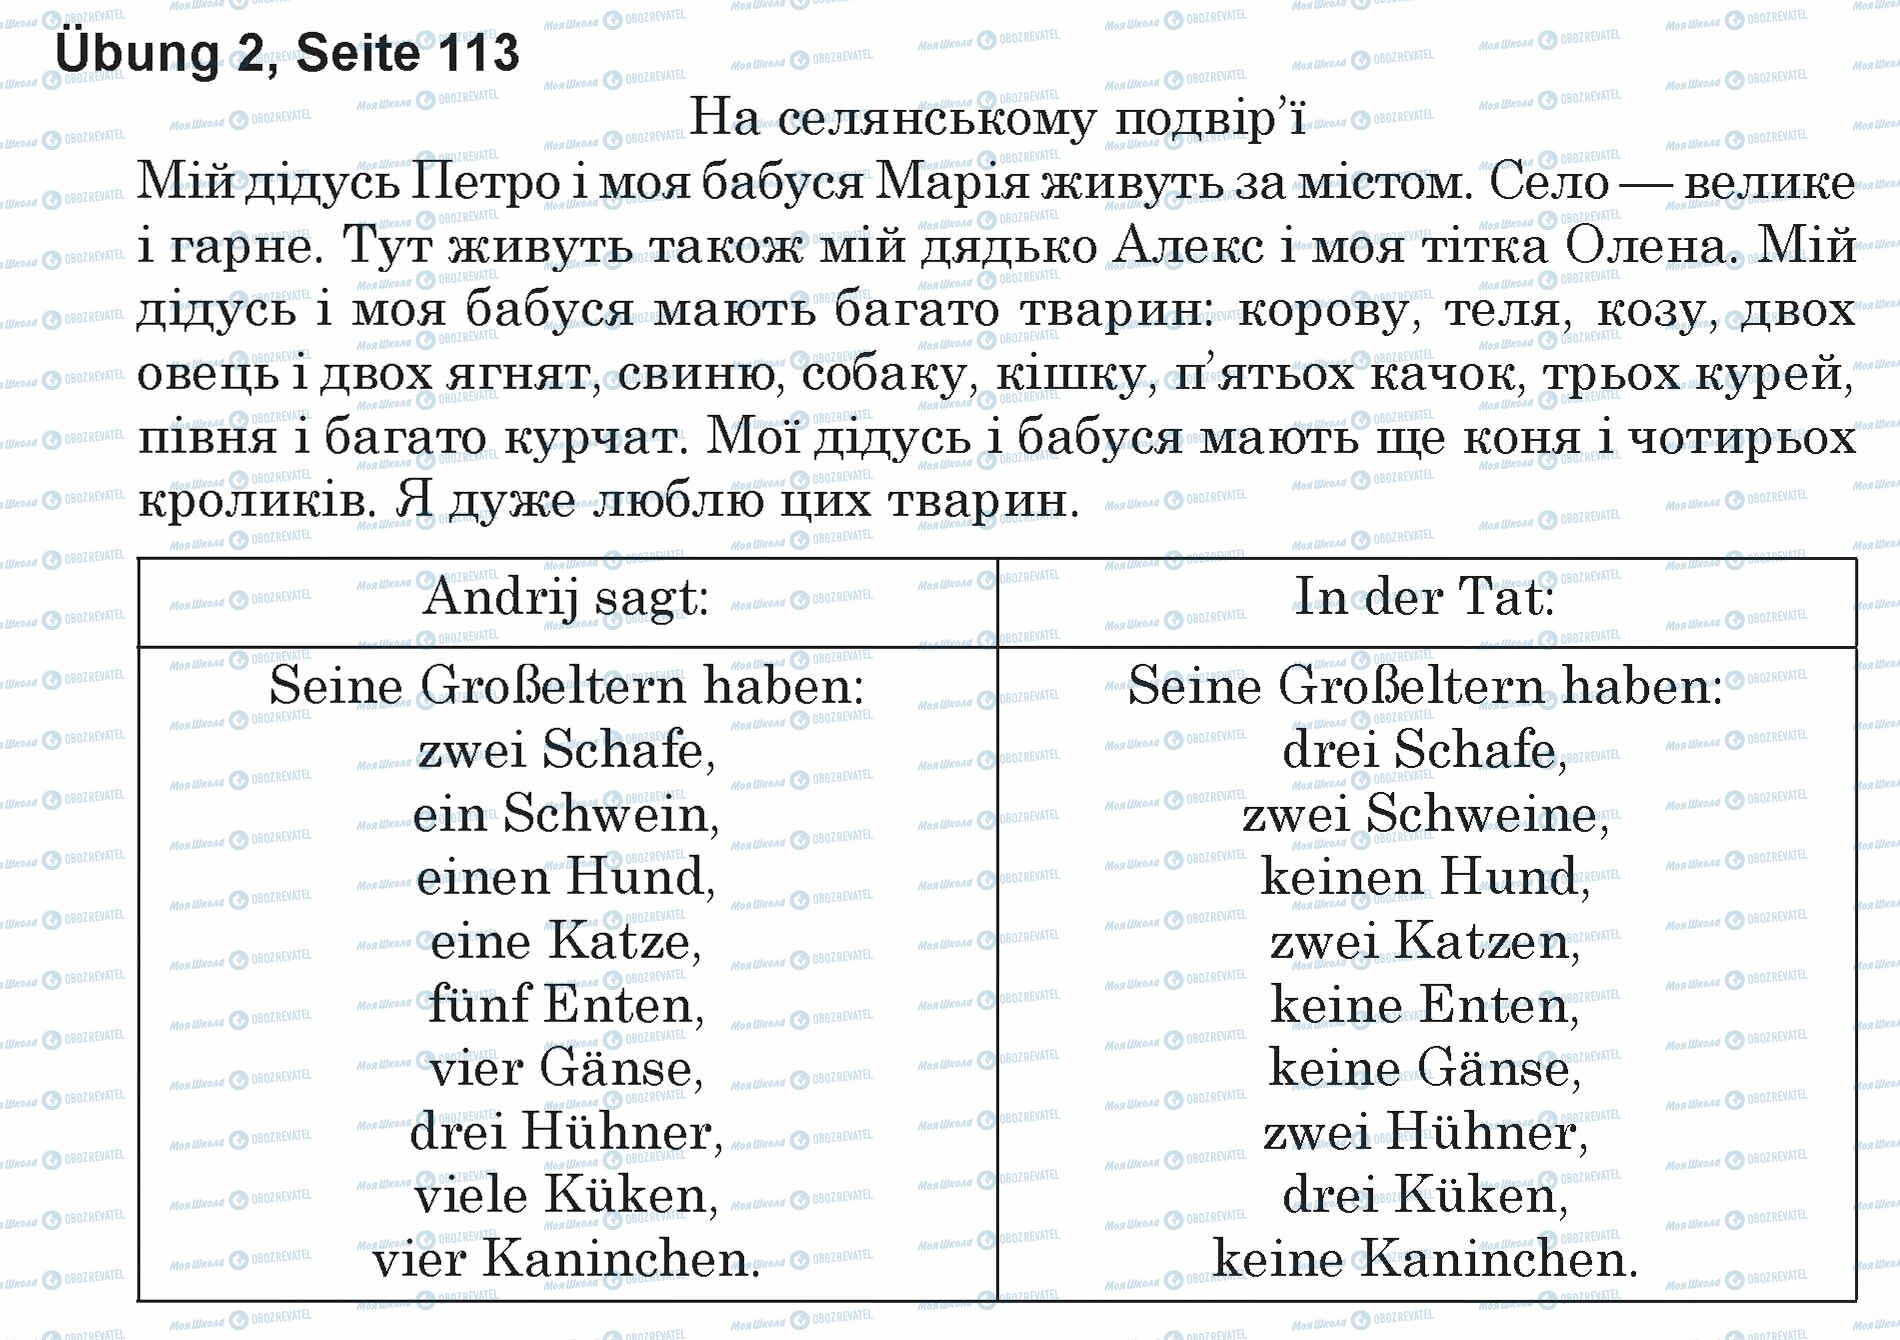 ГДЗ Німецька мова 5 клас сторінка Ubung 2, Seite 113